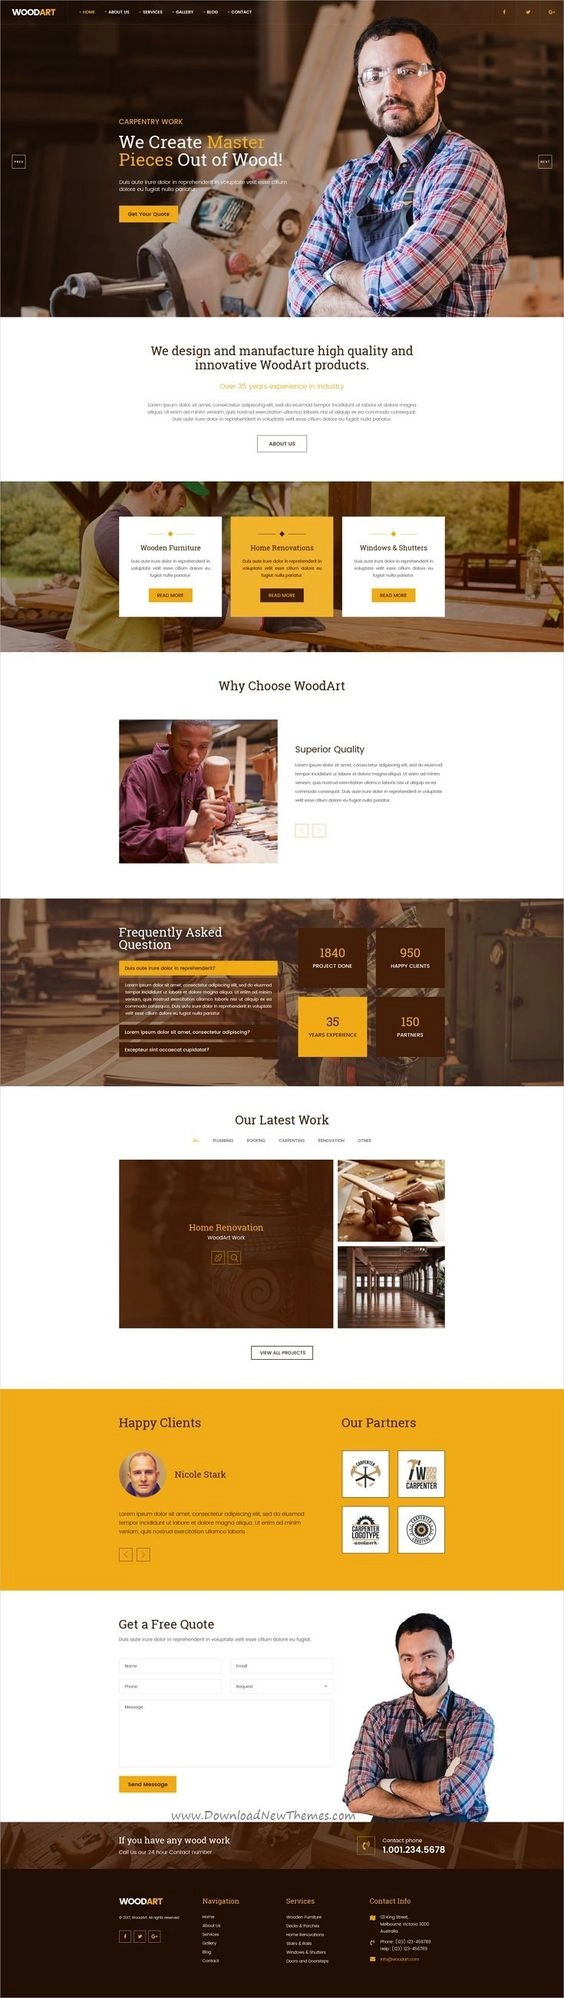 Thiết kế website giới thiệu công ty, doanh nghiệp đẹp